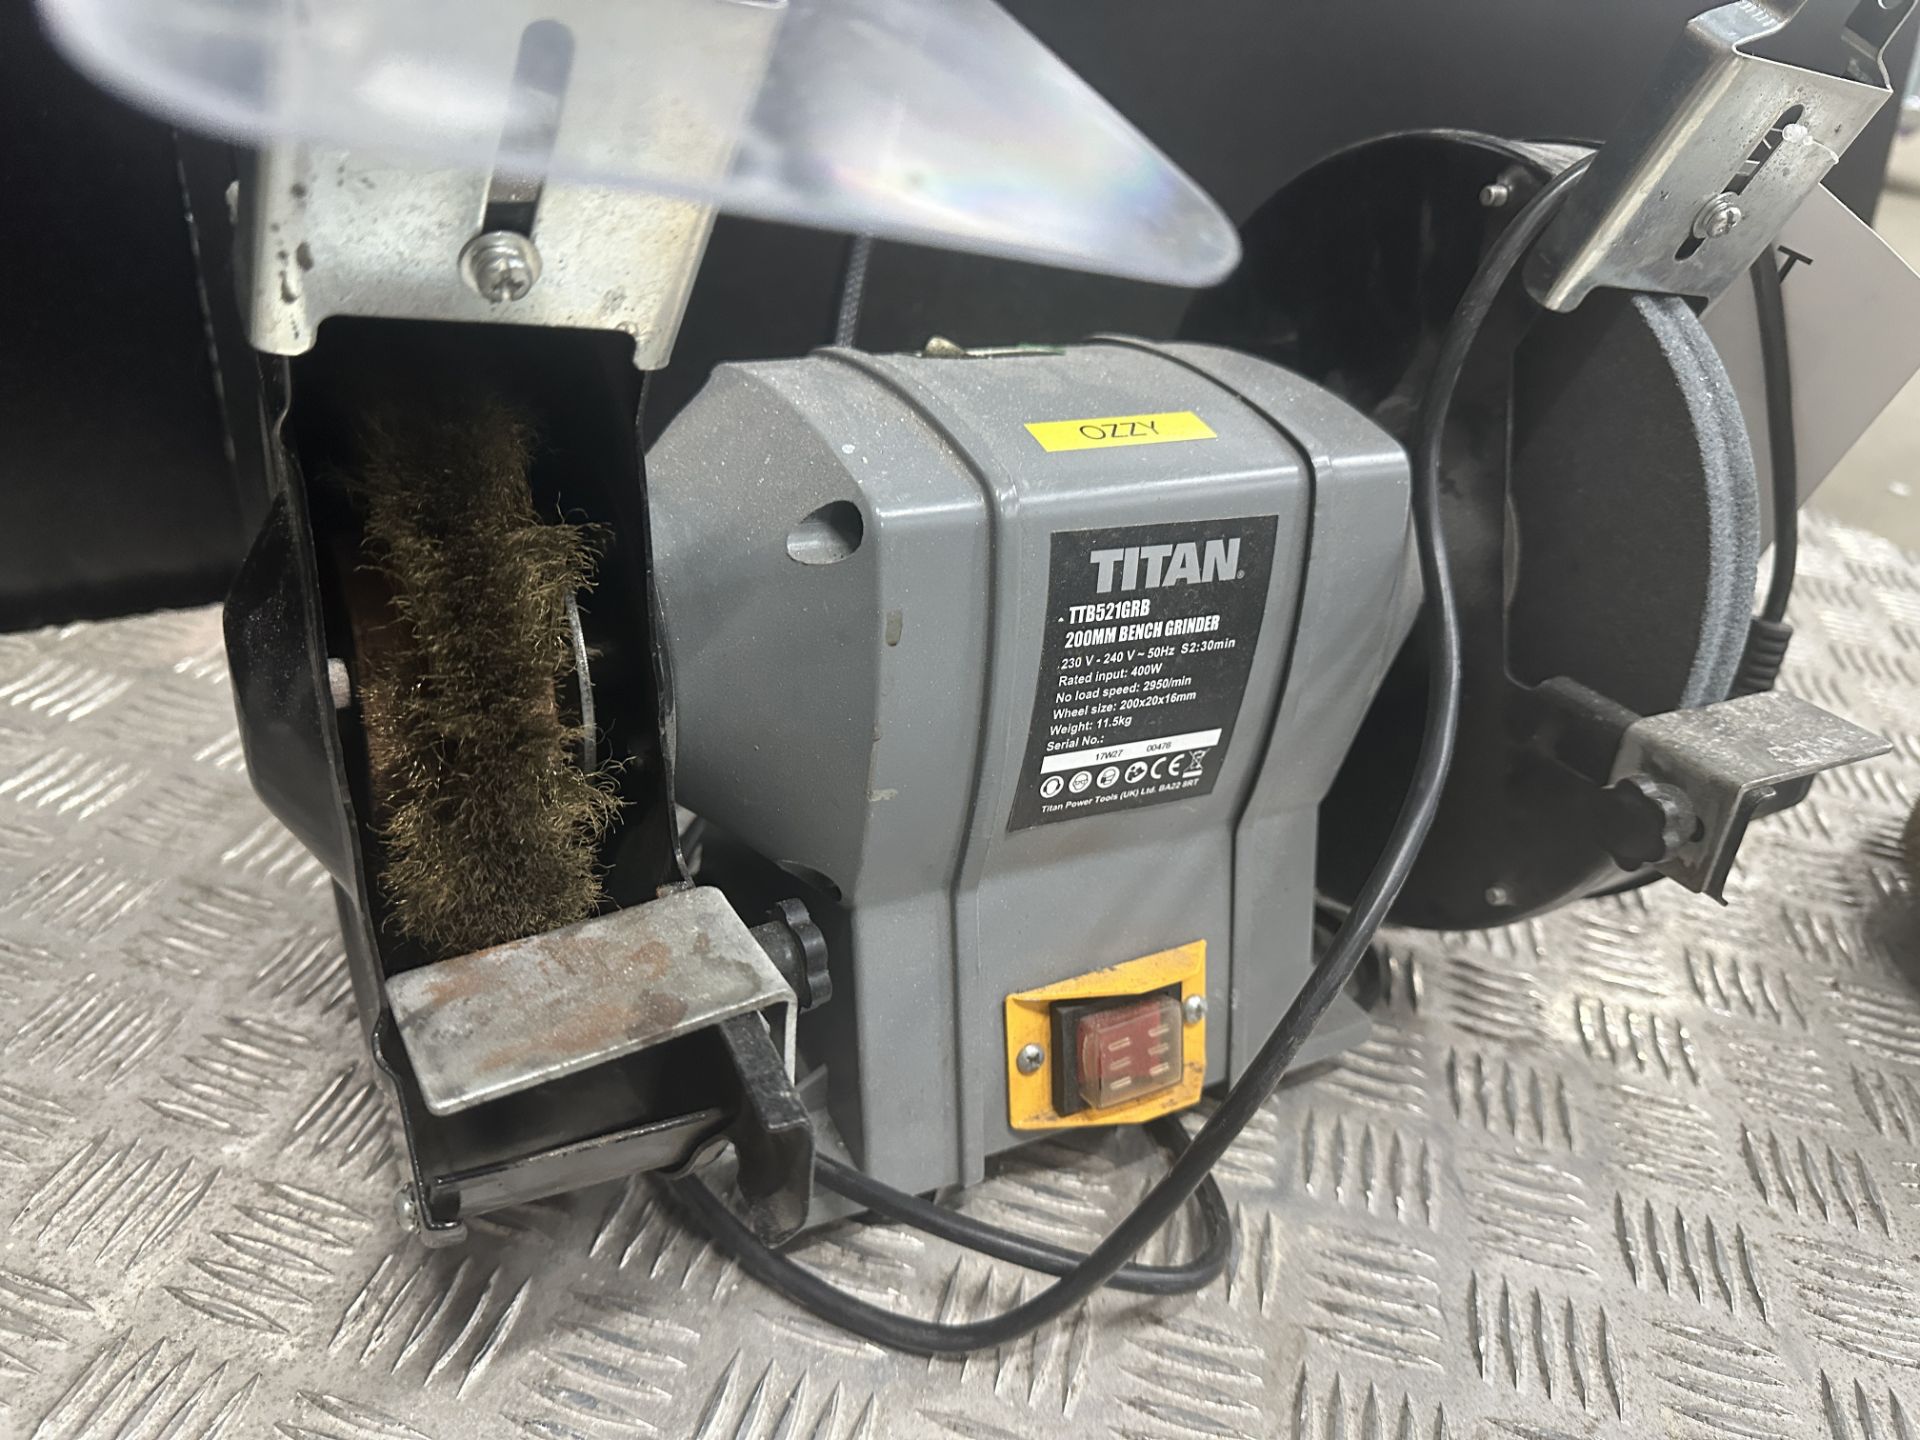 Titan TTB521GRB 200mm bench grinder - Bild 4 aus 4